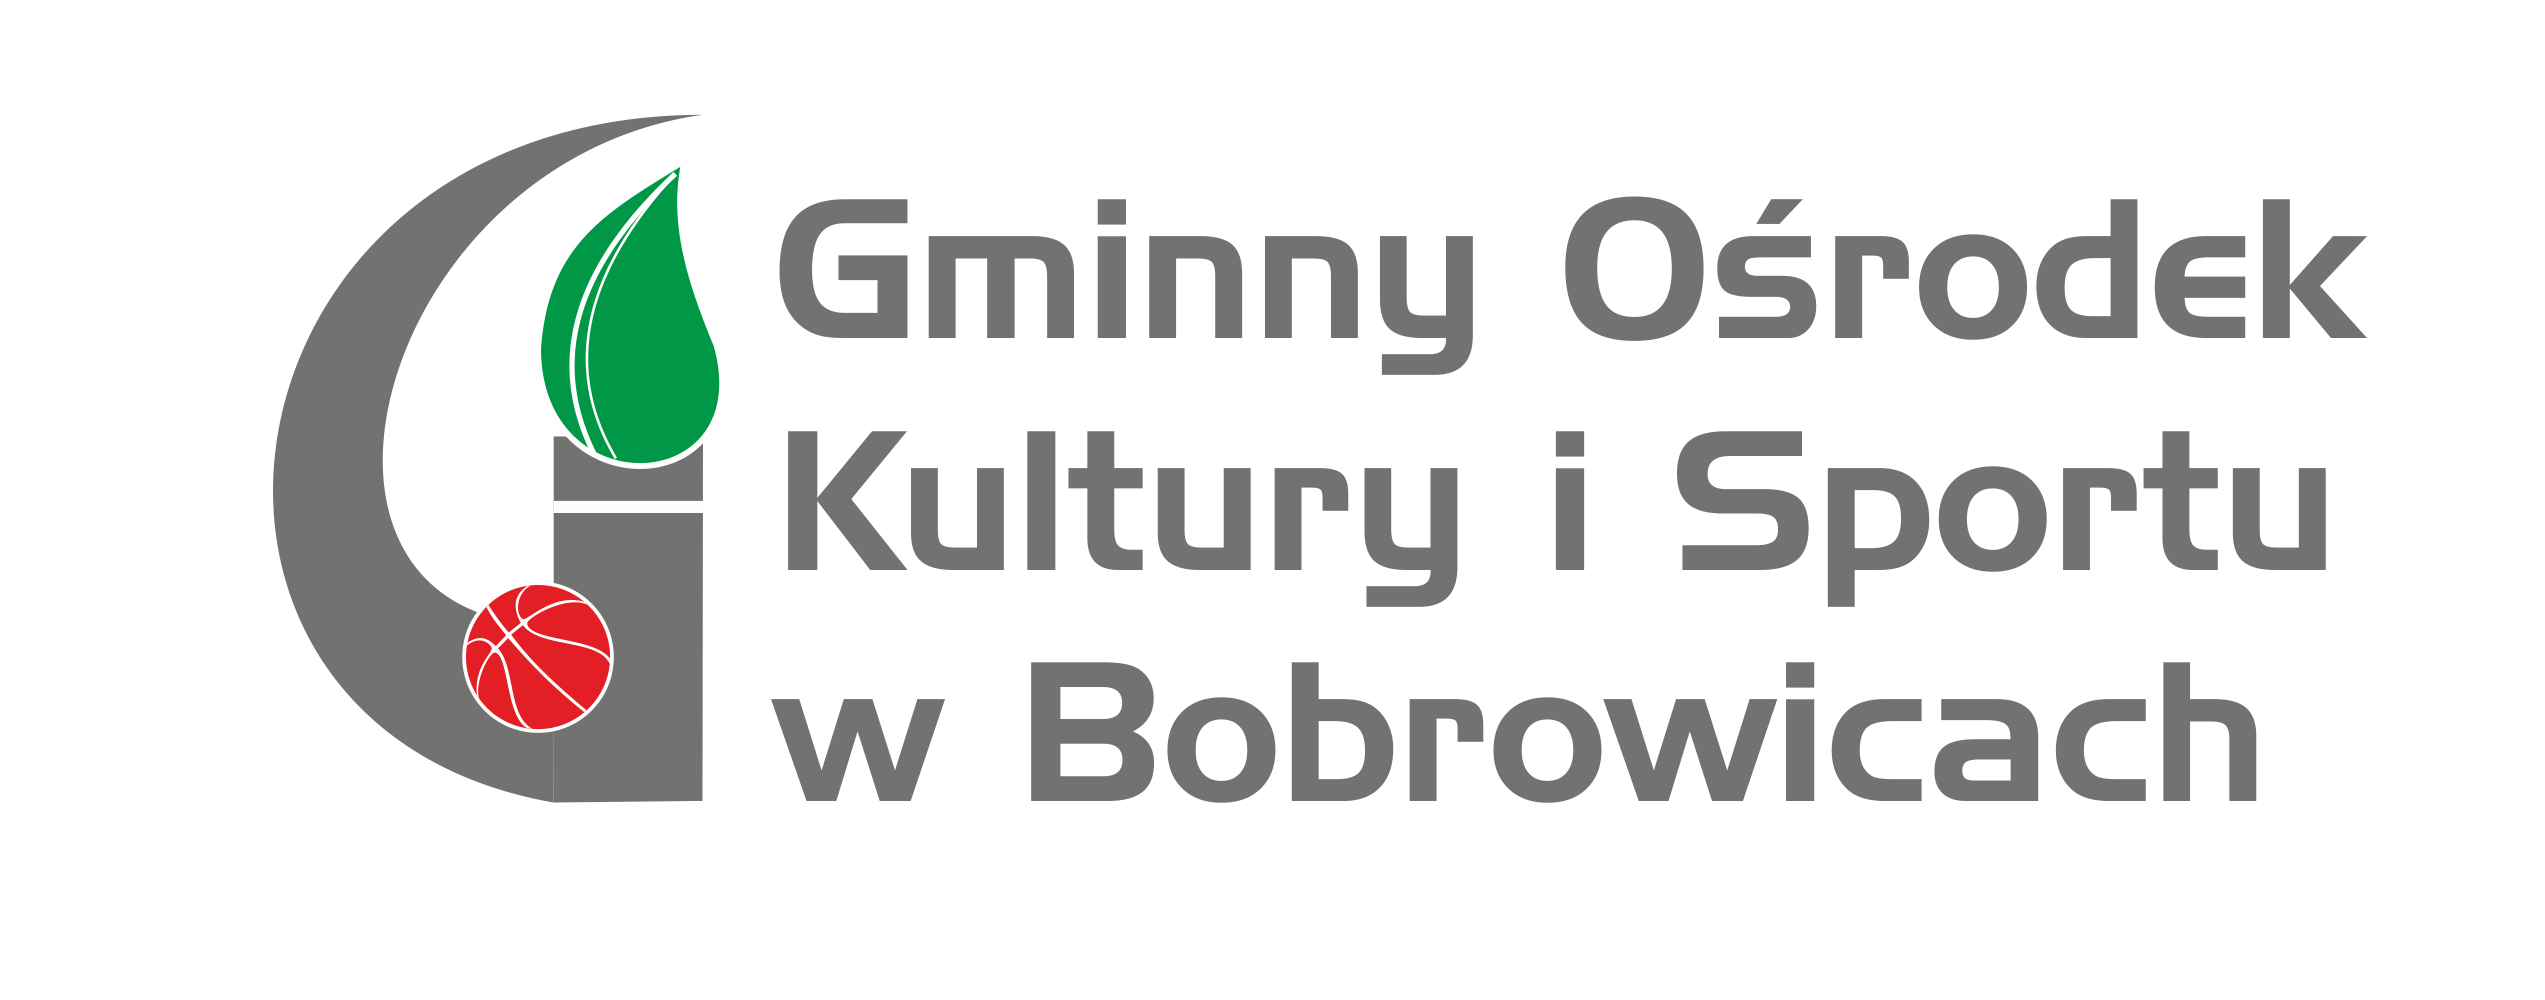 Gminny Ośrodek Kultury i Sportu w Bobrowicach Logo